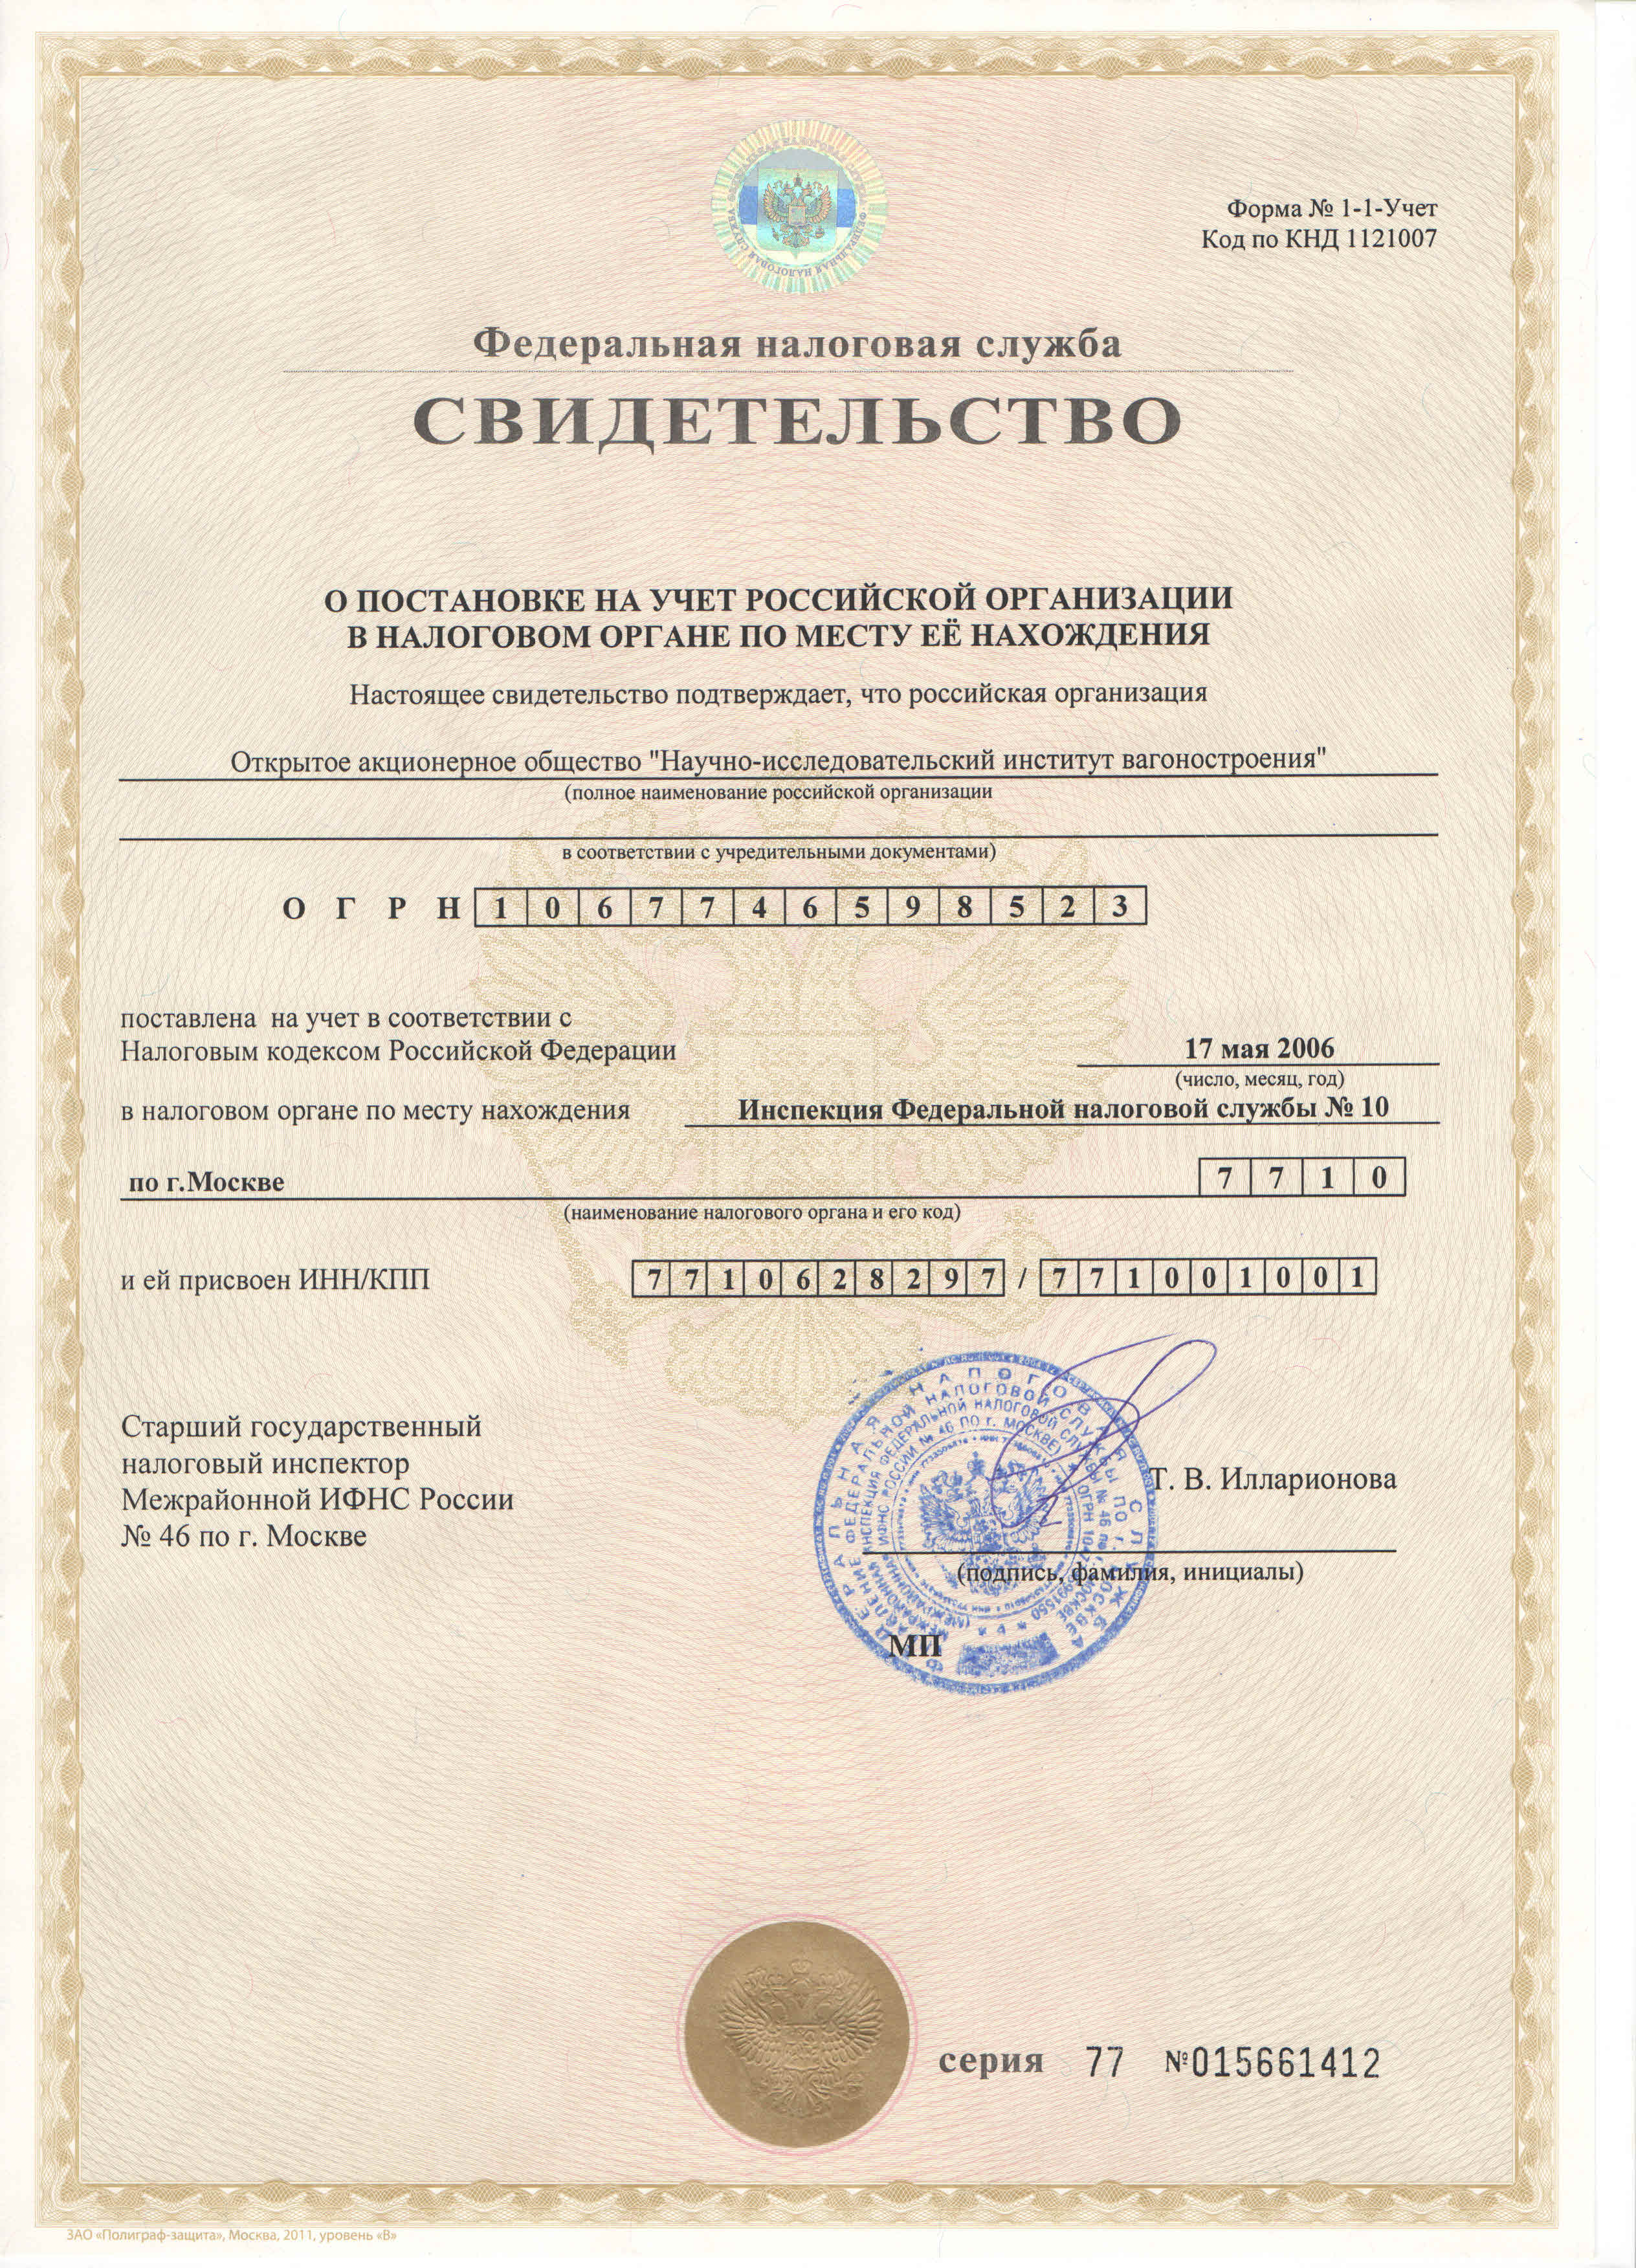 Свидетельство о постановке на учёт юридического лица в налоговом органе по месту нахождения на территории Россиской Федерации